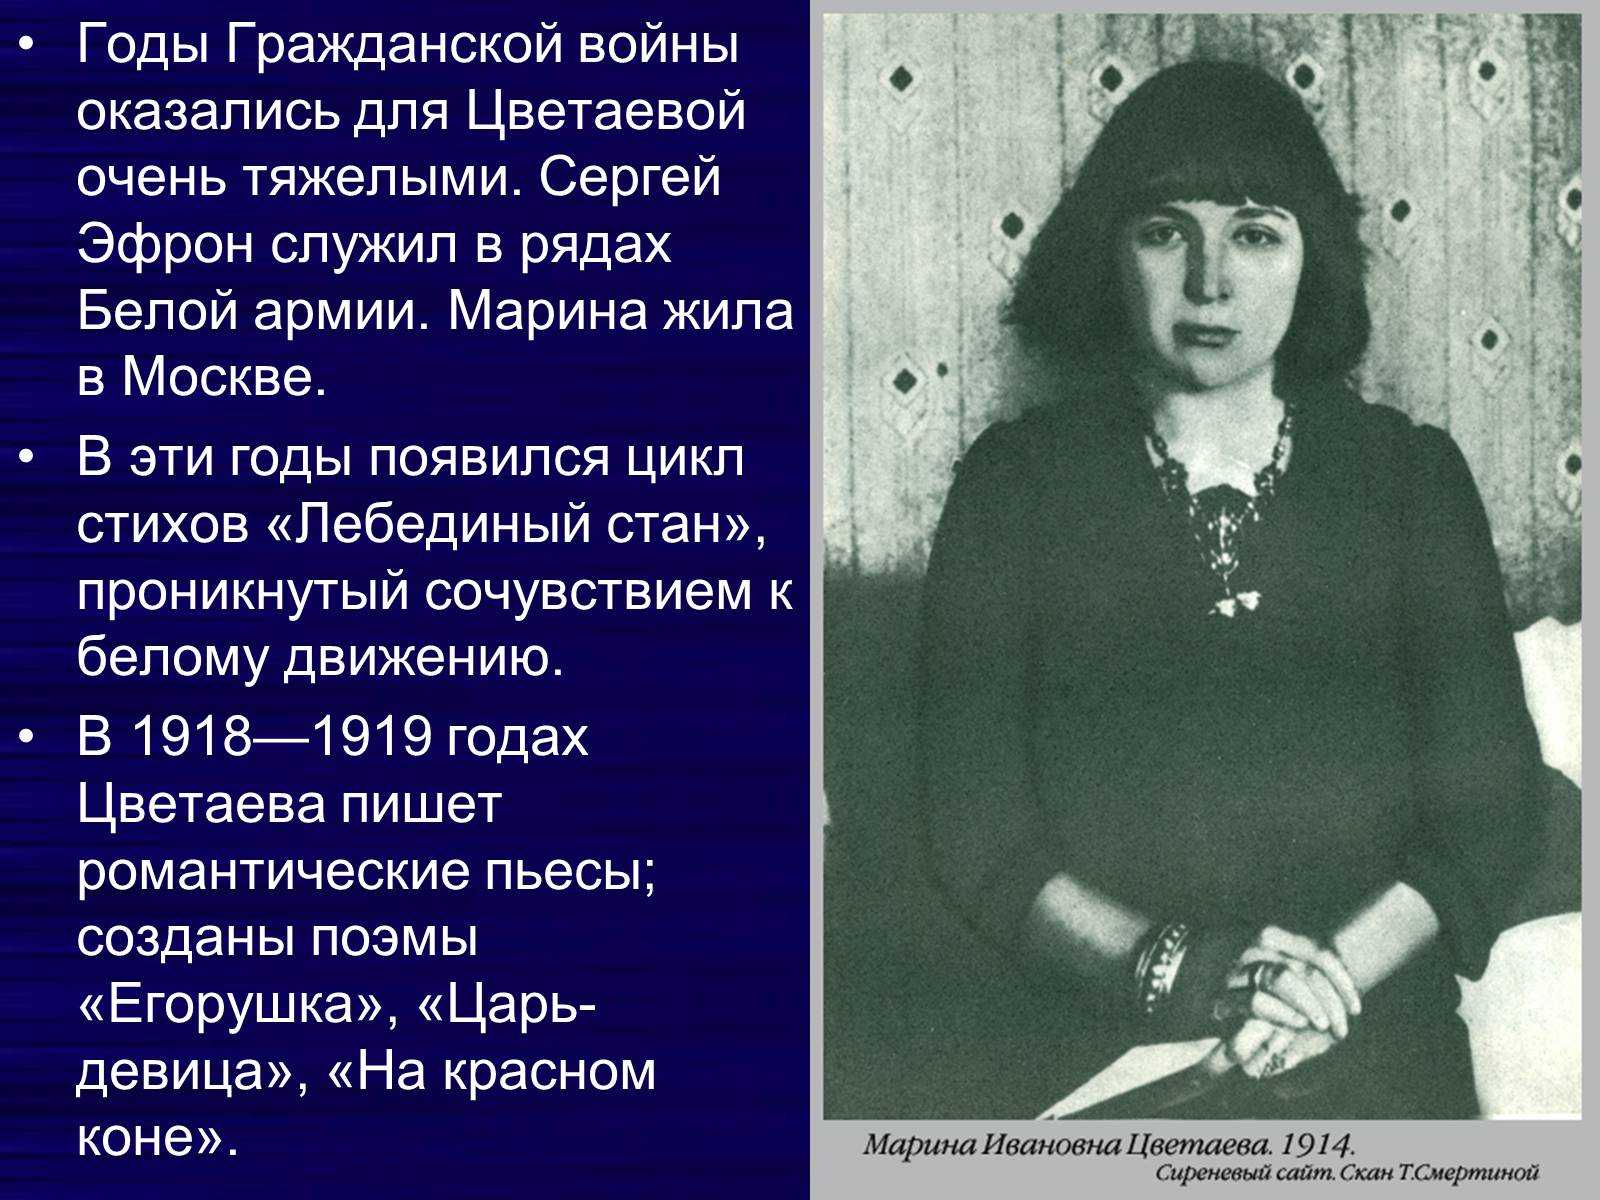 Марина Цветаева в годы революции